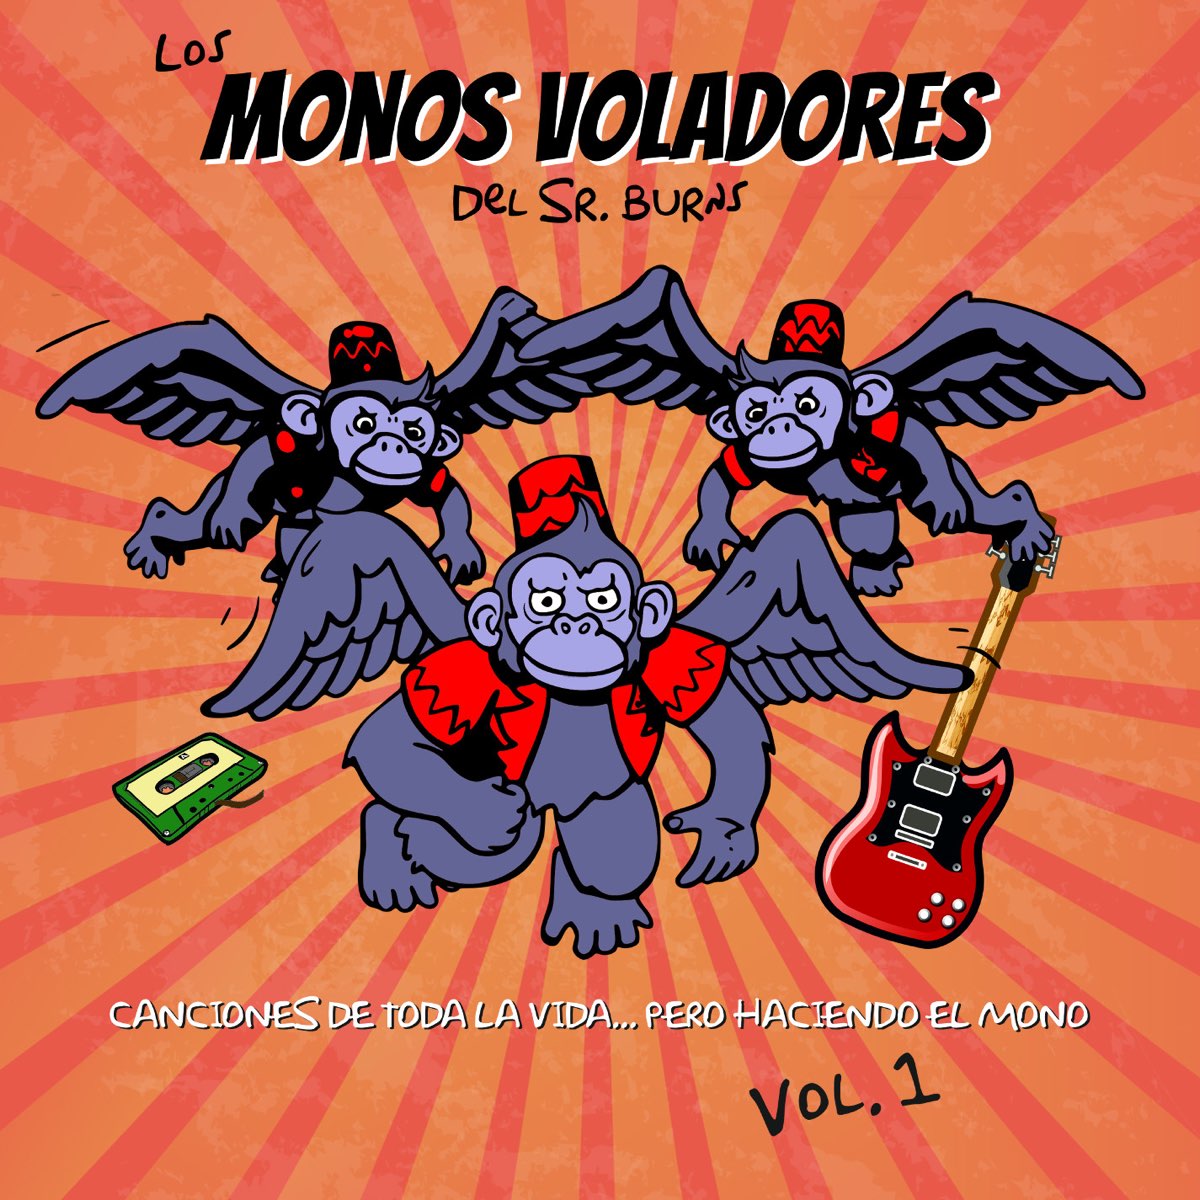 Canciones de toda la vida... pero haciendo el mono (Vol.1) de Los Monos  Voladores del Sr. Burns en Apple Music